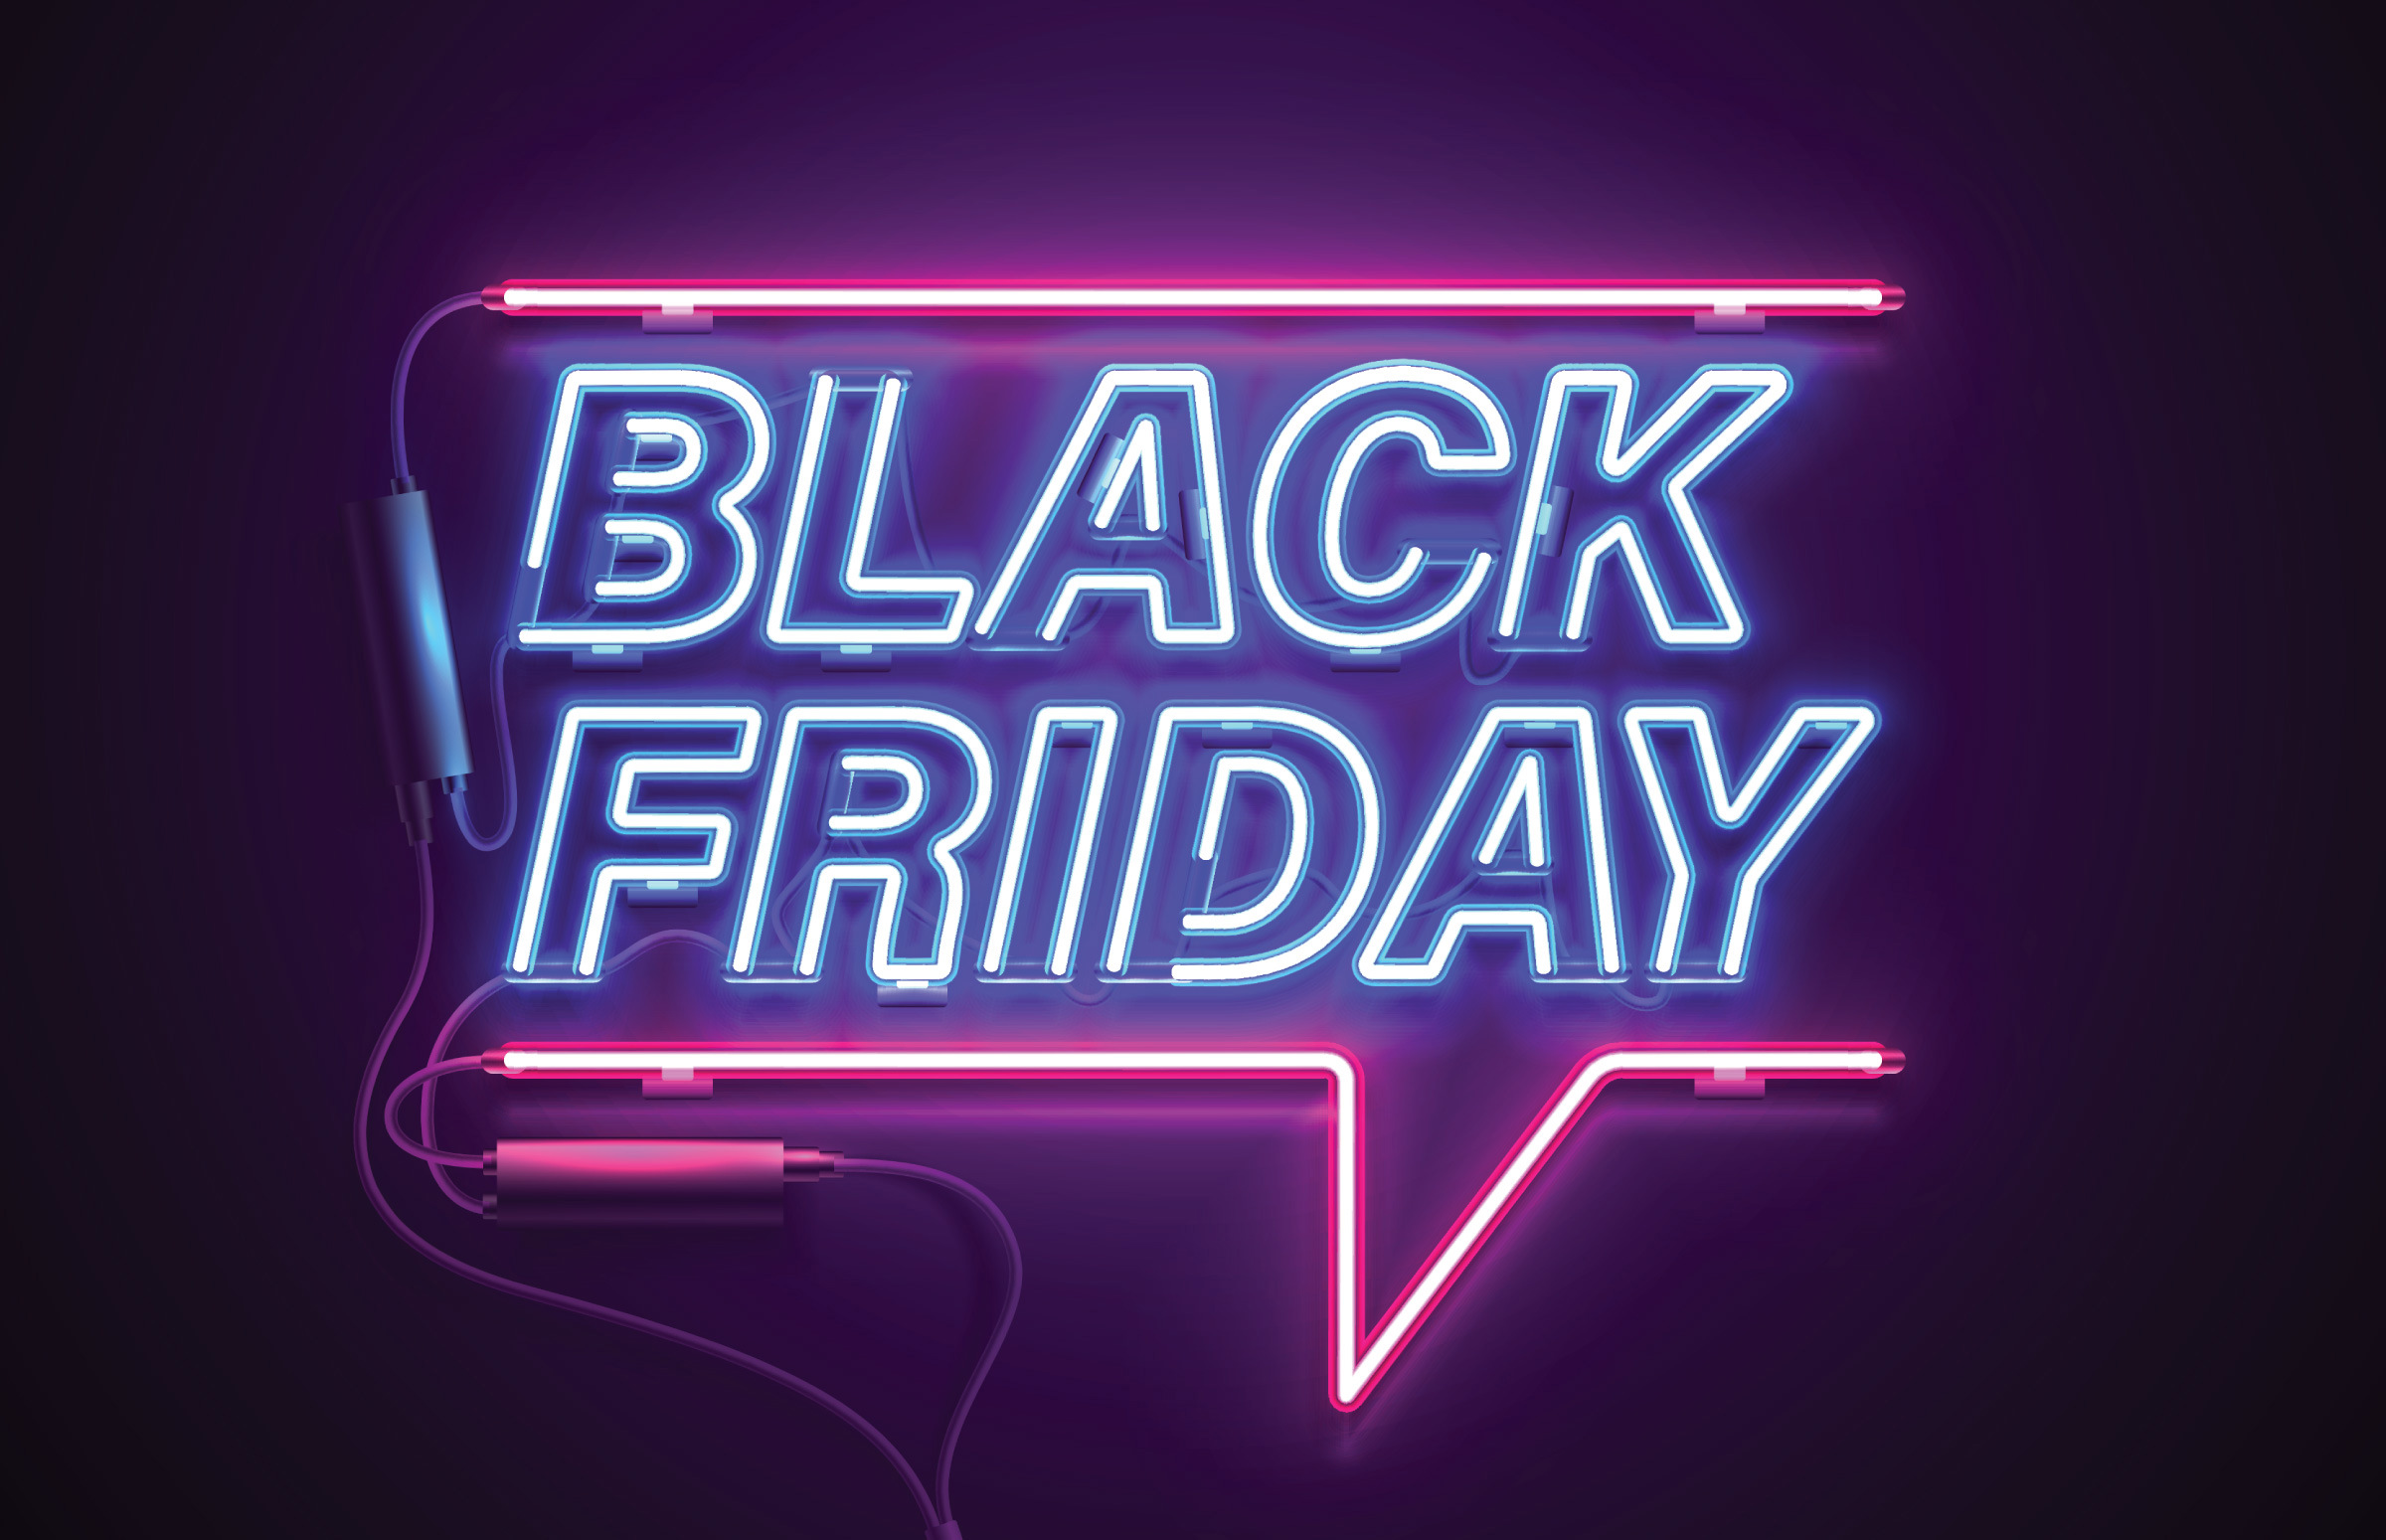 Best Black Friday deals under 50